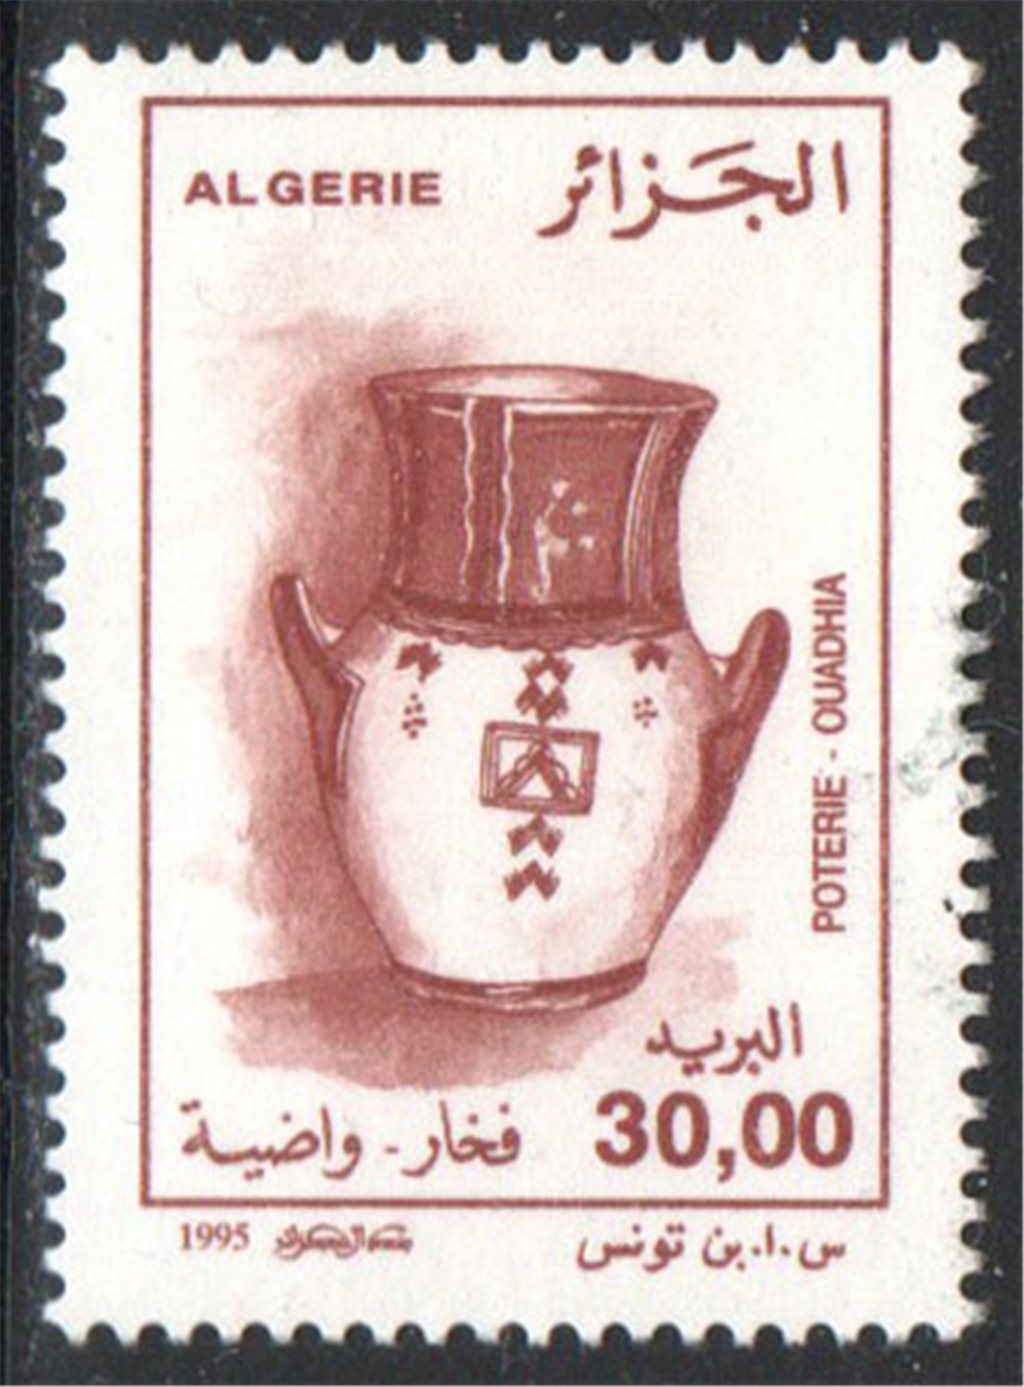 Algeria Scott 1058 Used - Click Image to Close